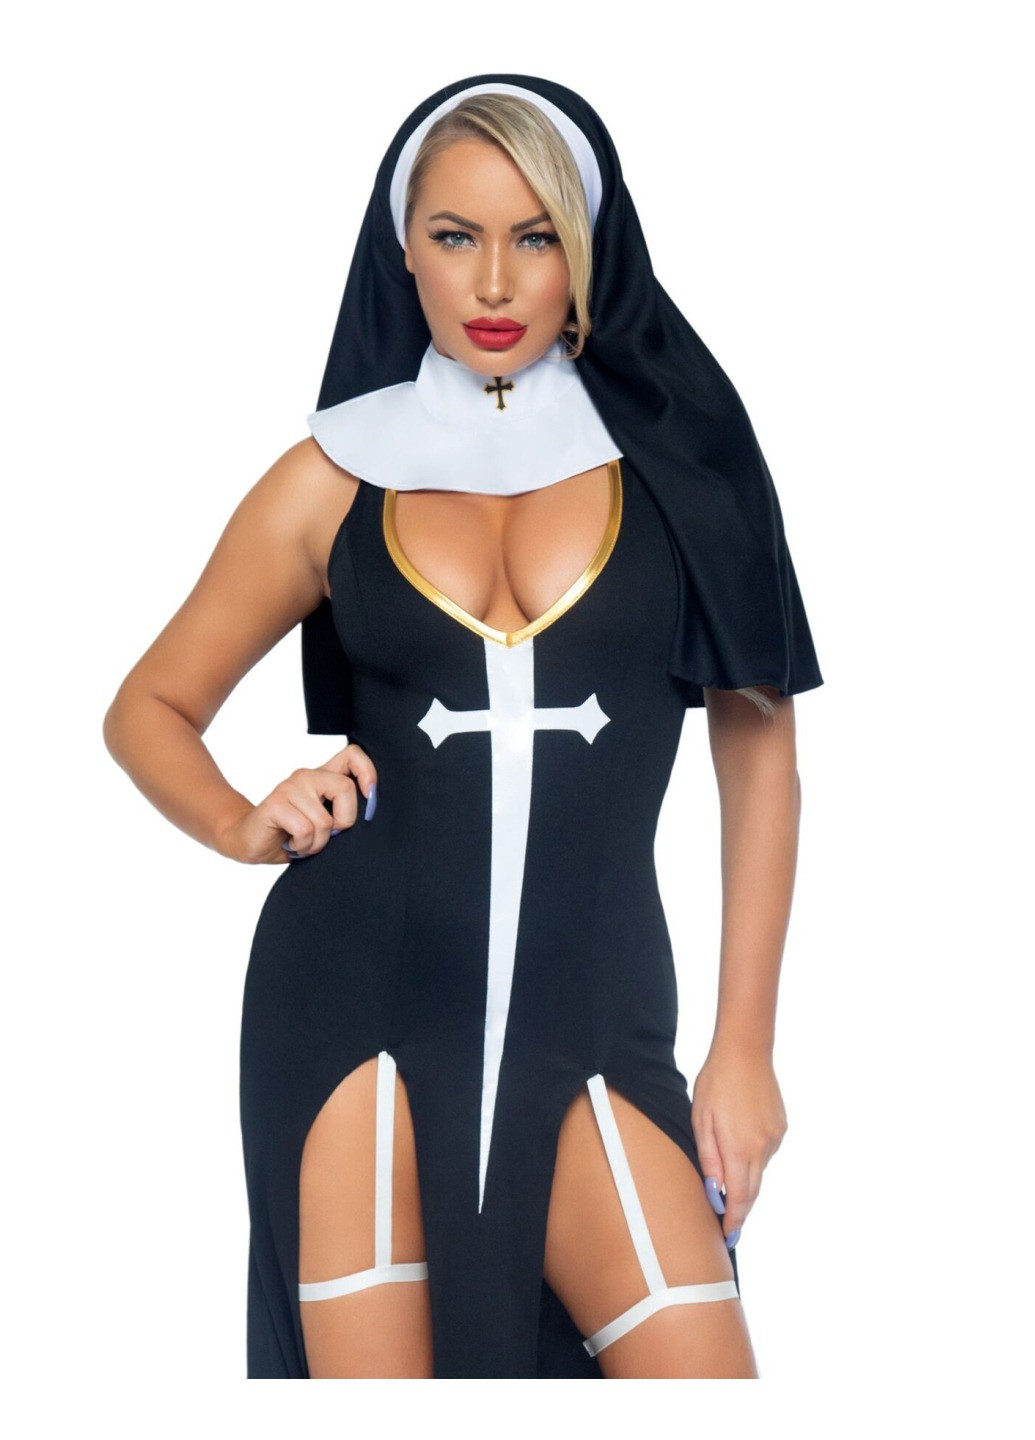 Прозрачный демисезонный костюм монашки-грешницы sultry sinner s, платье, головной убор, воротник Leg Avenue